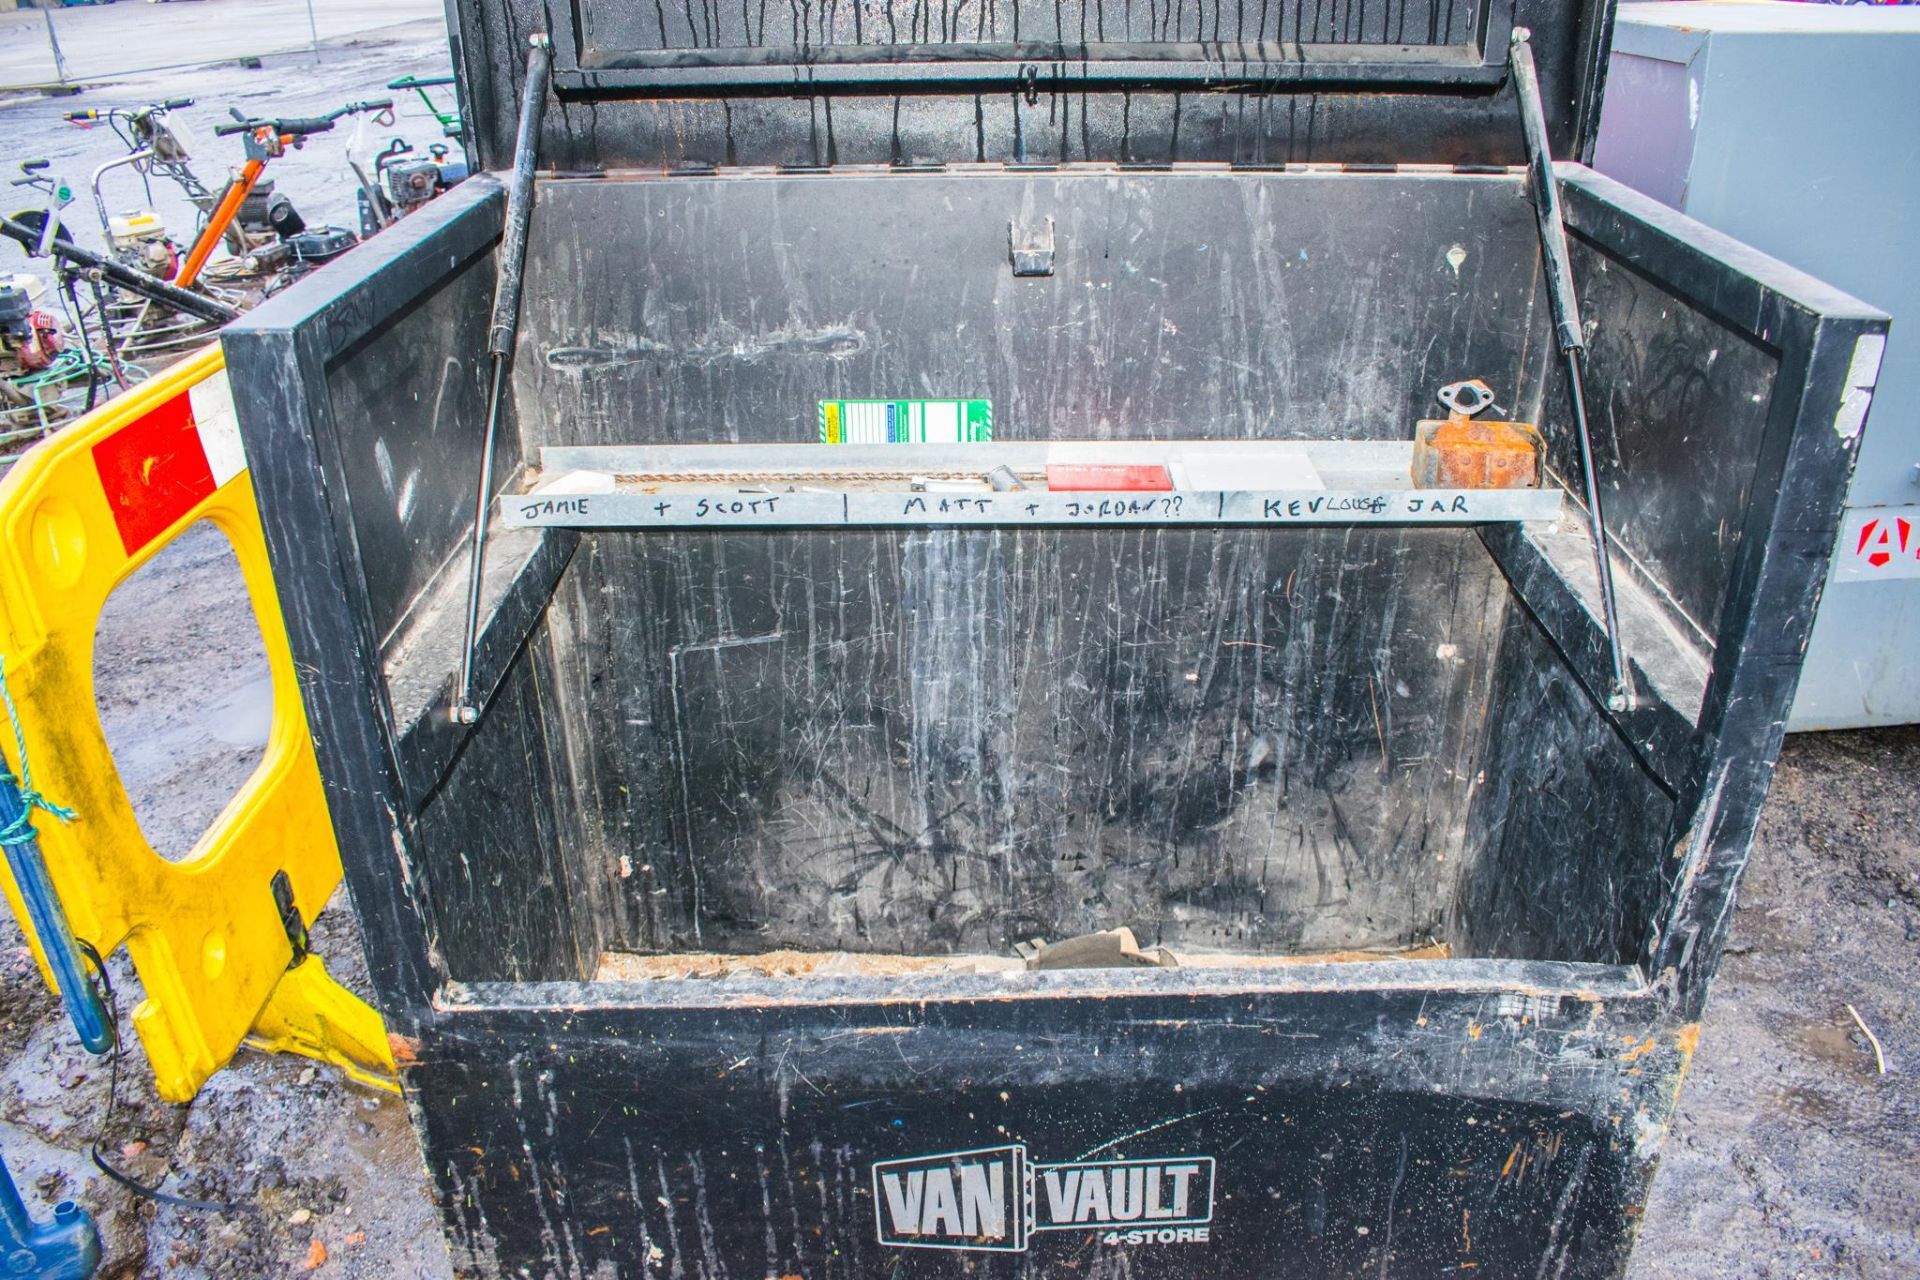 Van Vault steel tool store ** No keys but open ** - Image 2 of 2